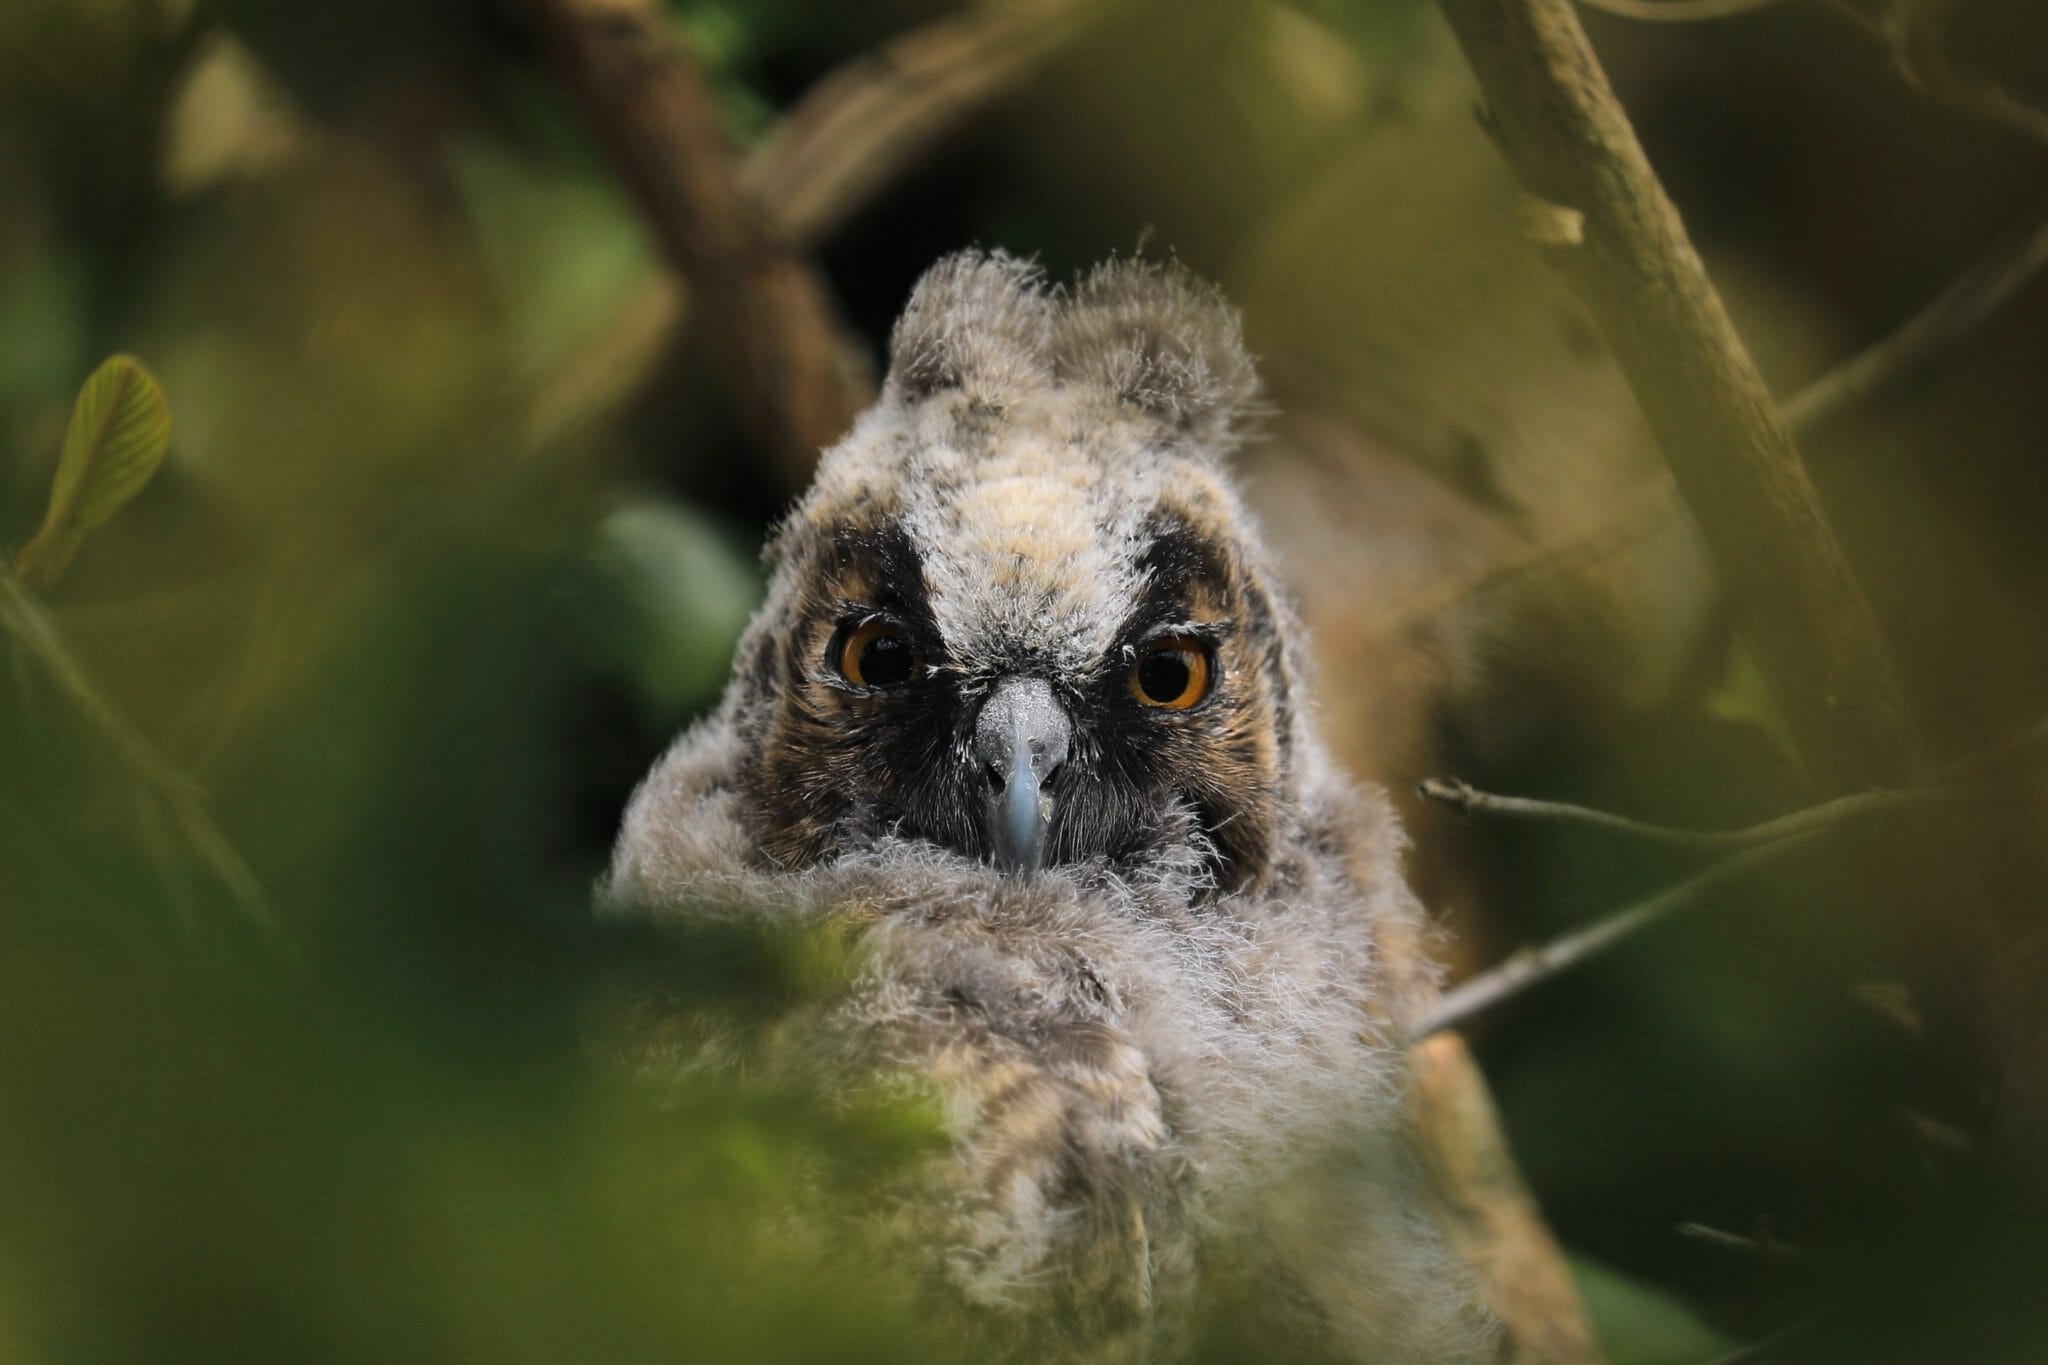 Young Long-eared owl Kopstal May 2107